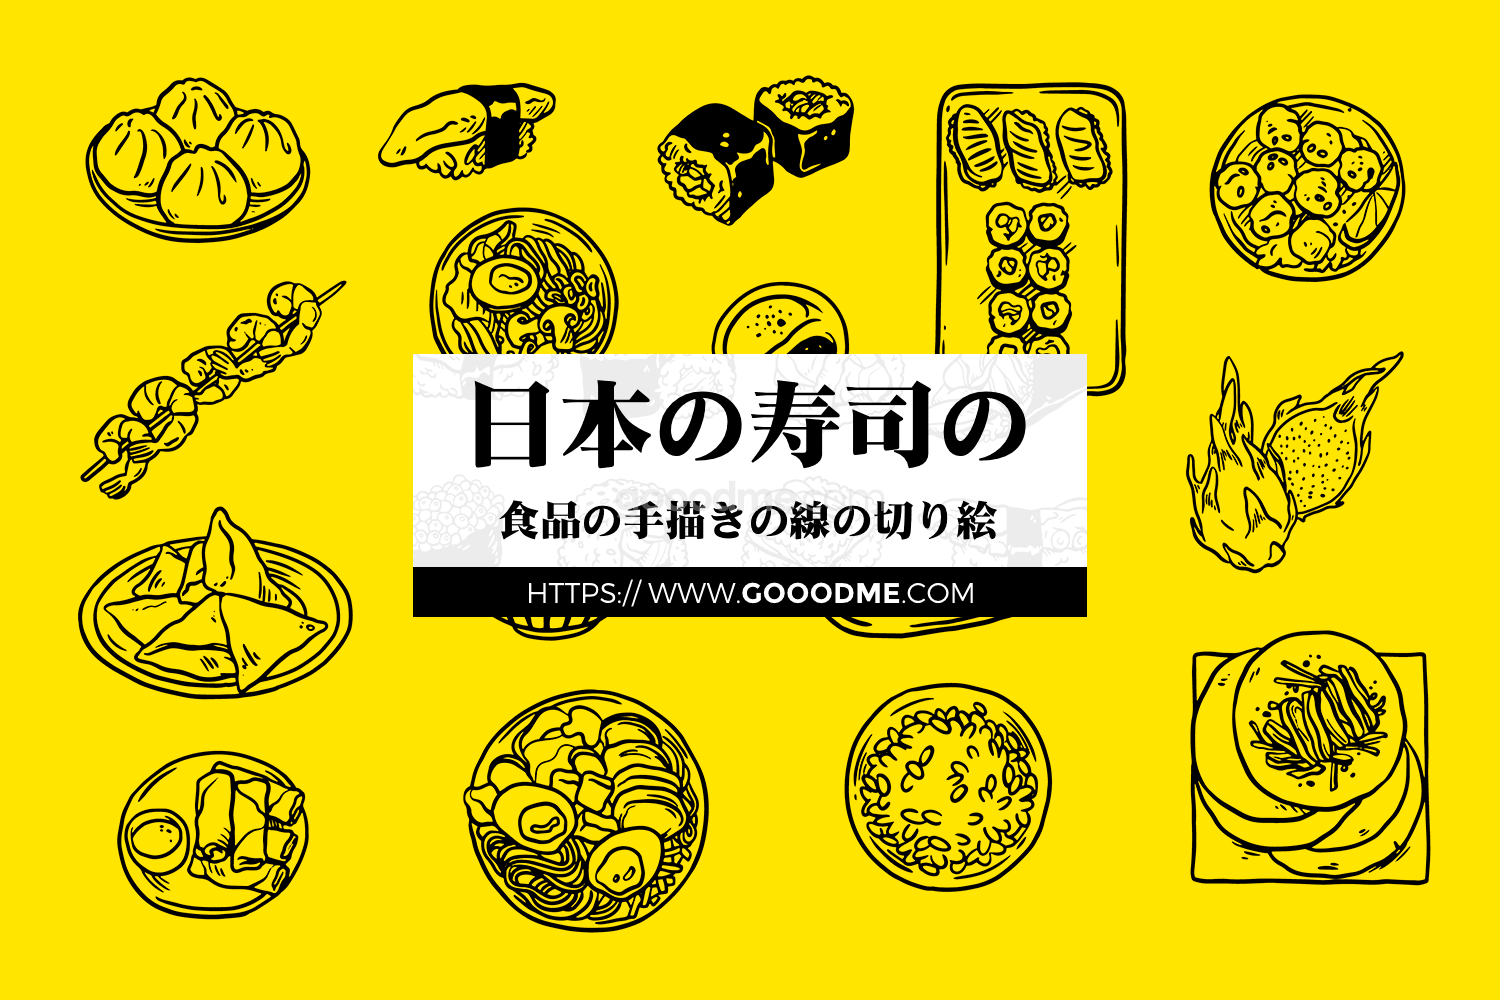 795 可商用日式寿司食物手绘线条剪贴画矢量素材collection asian food doodles